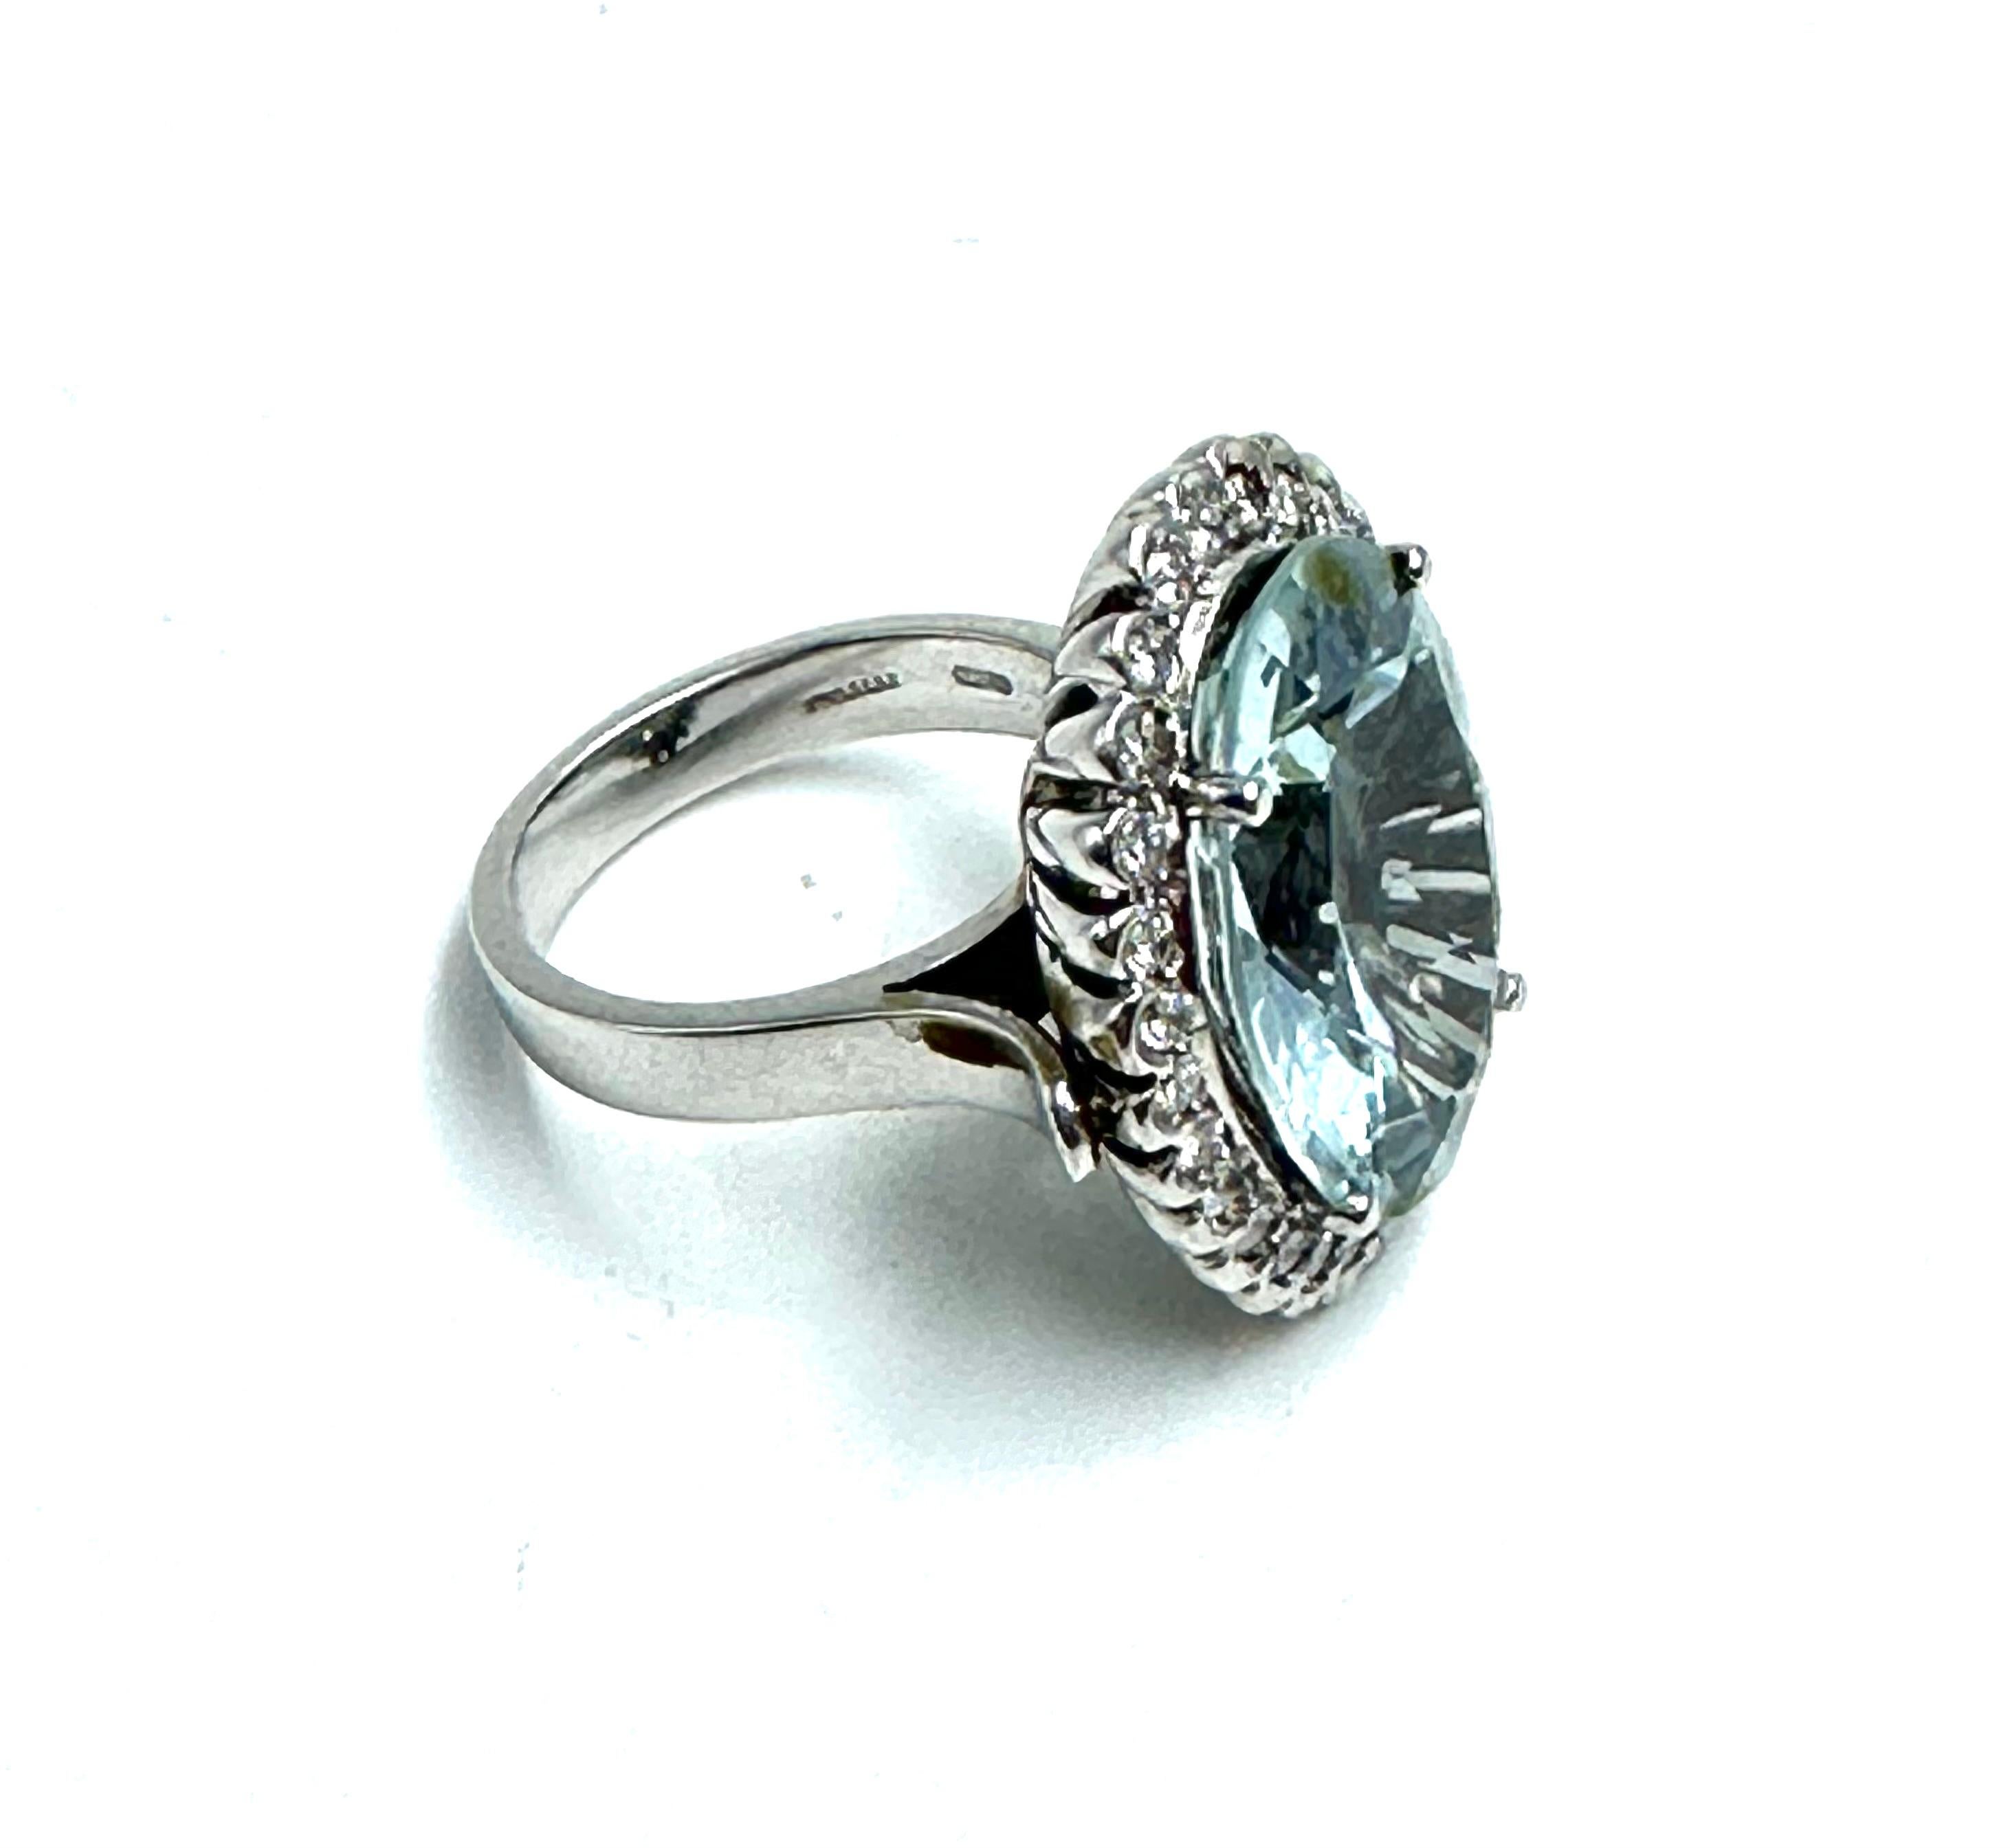 Questo enorme anello con acquamarina e diamanti è una bellezza classica che ti ruberà il cuore.
Realizzato con una splendida gemma acquamarina (22 ct.) e perfettamente completato da scintillanti diamanti (0,90 ct.), questo anello è un vero